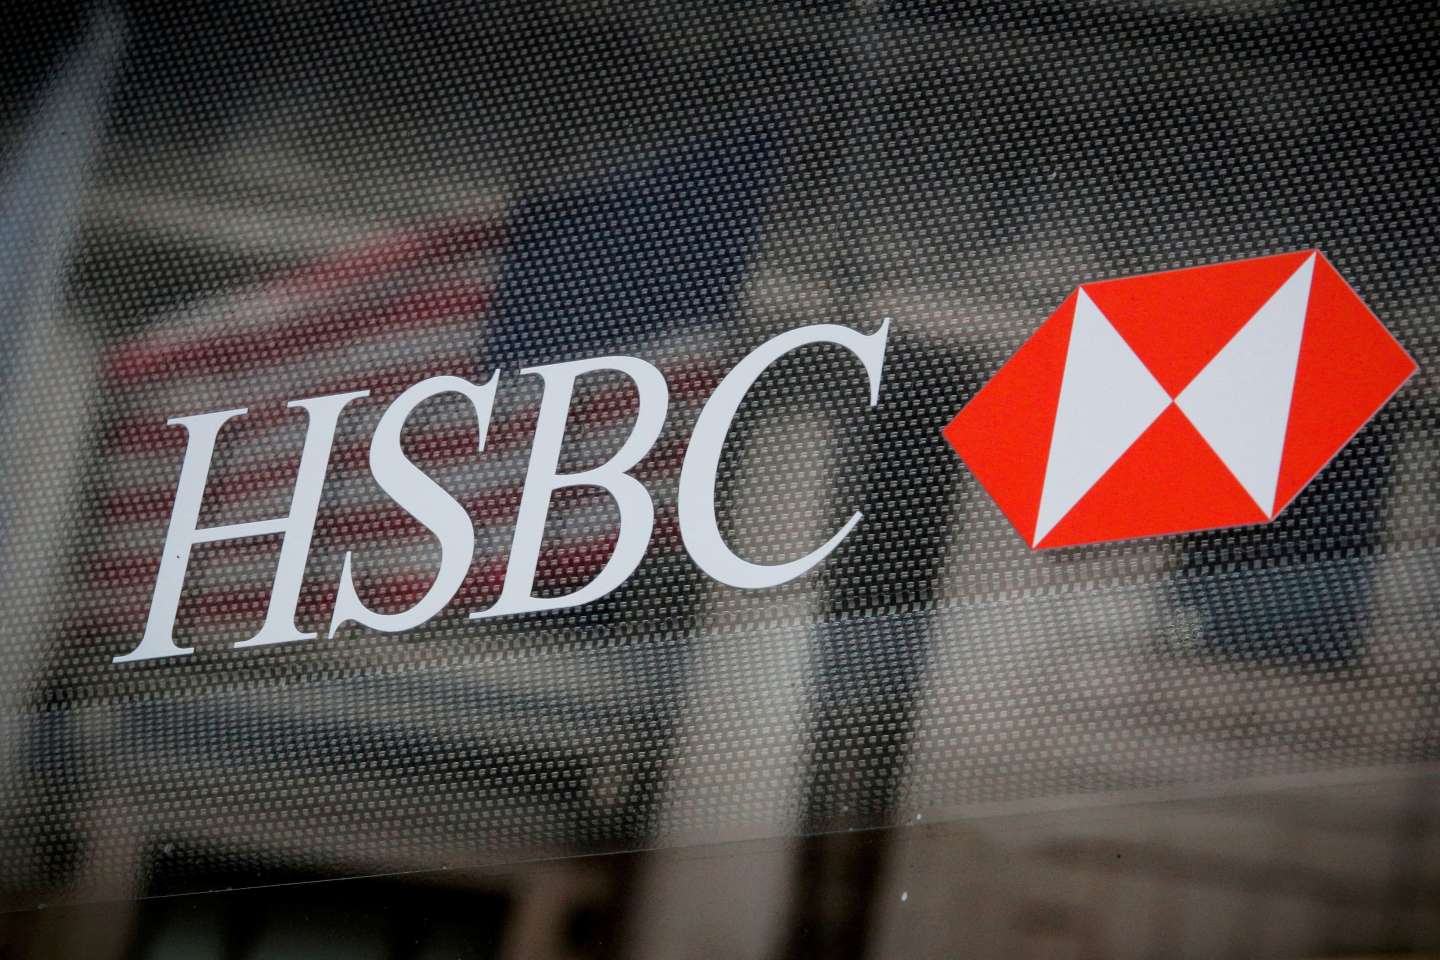 la vente de HSBC France gelée soudainement